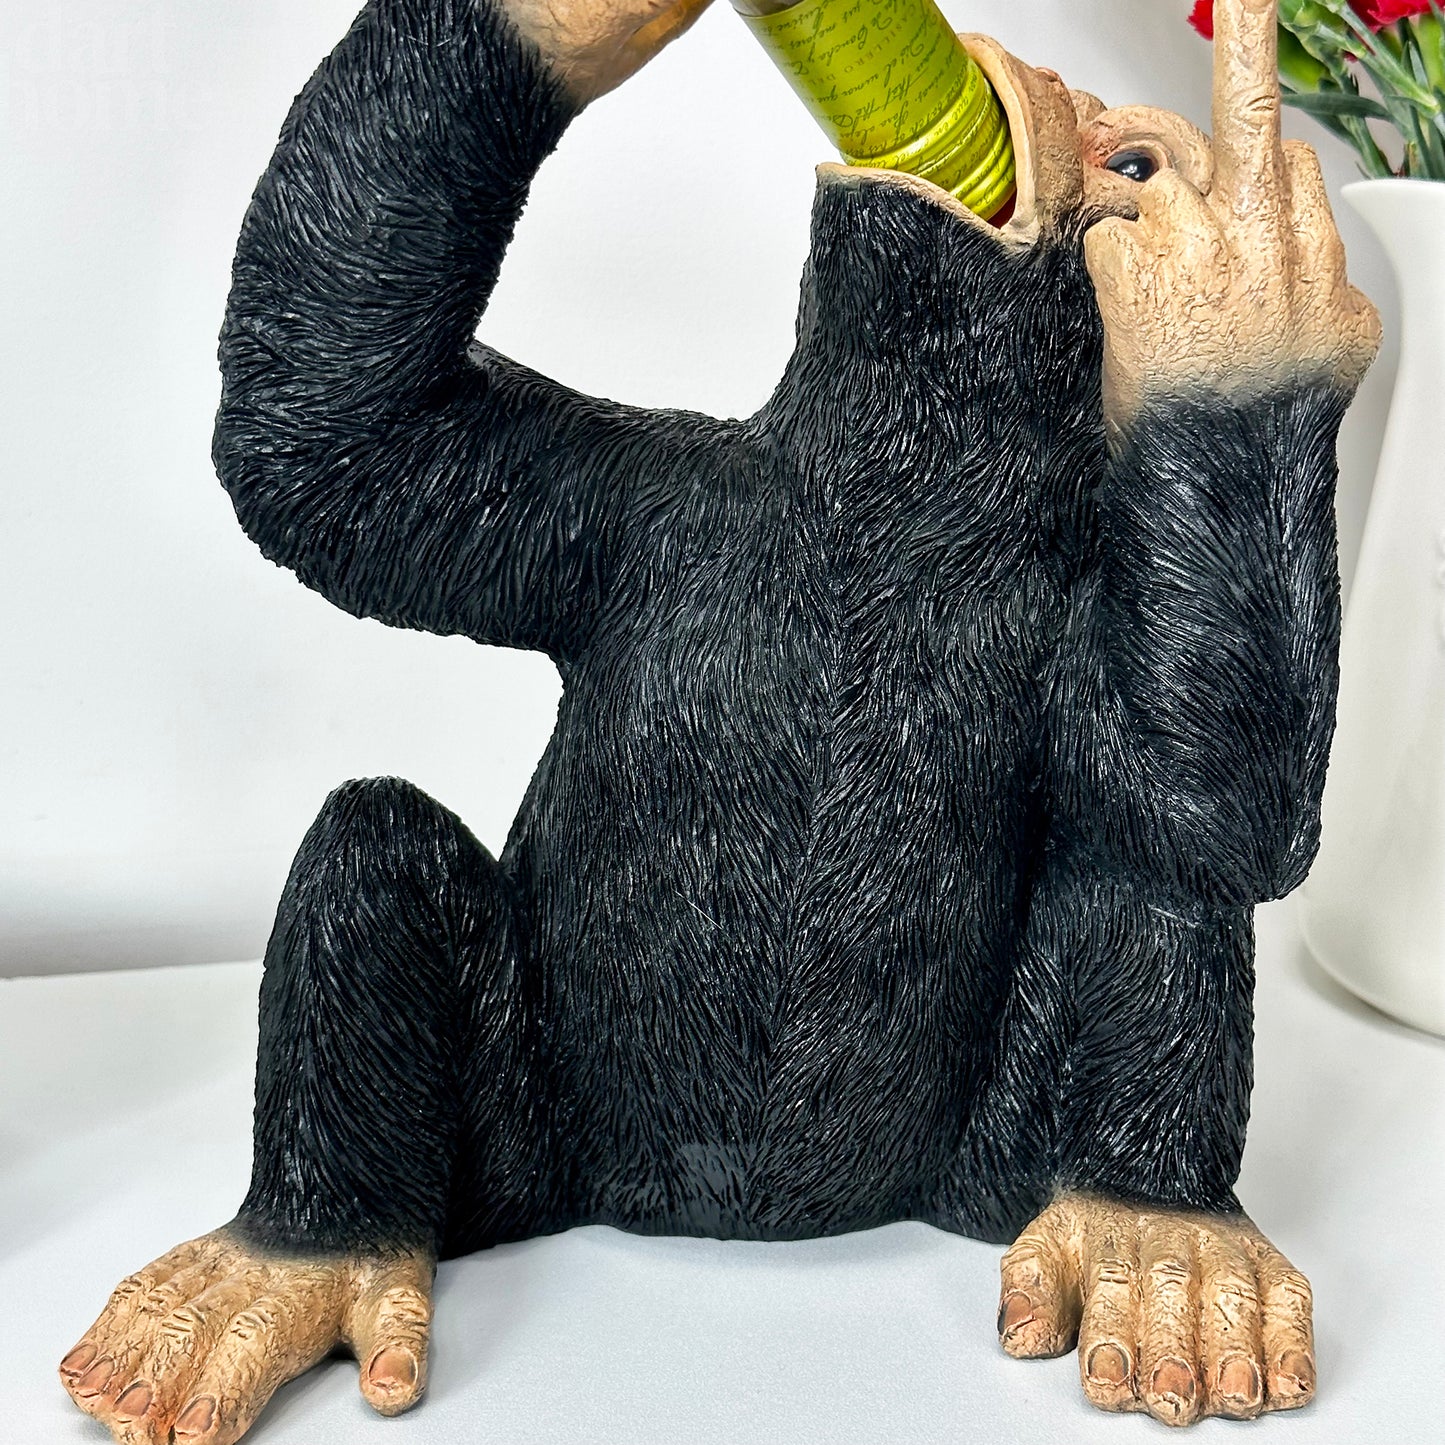 Drunken Monkey Wine Bottle Holder